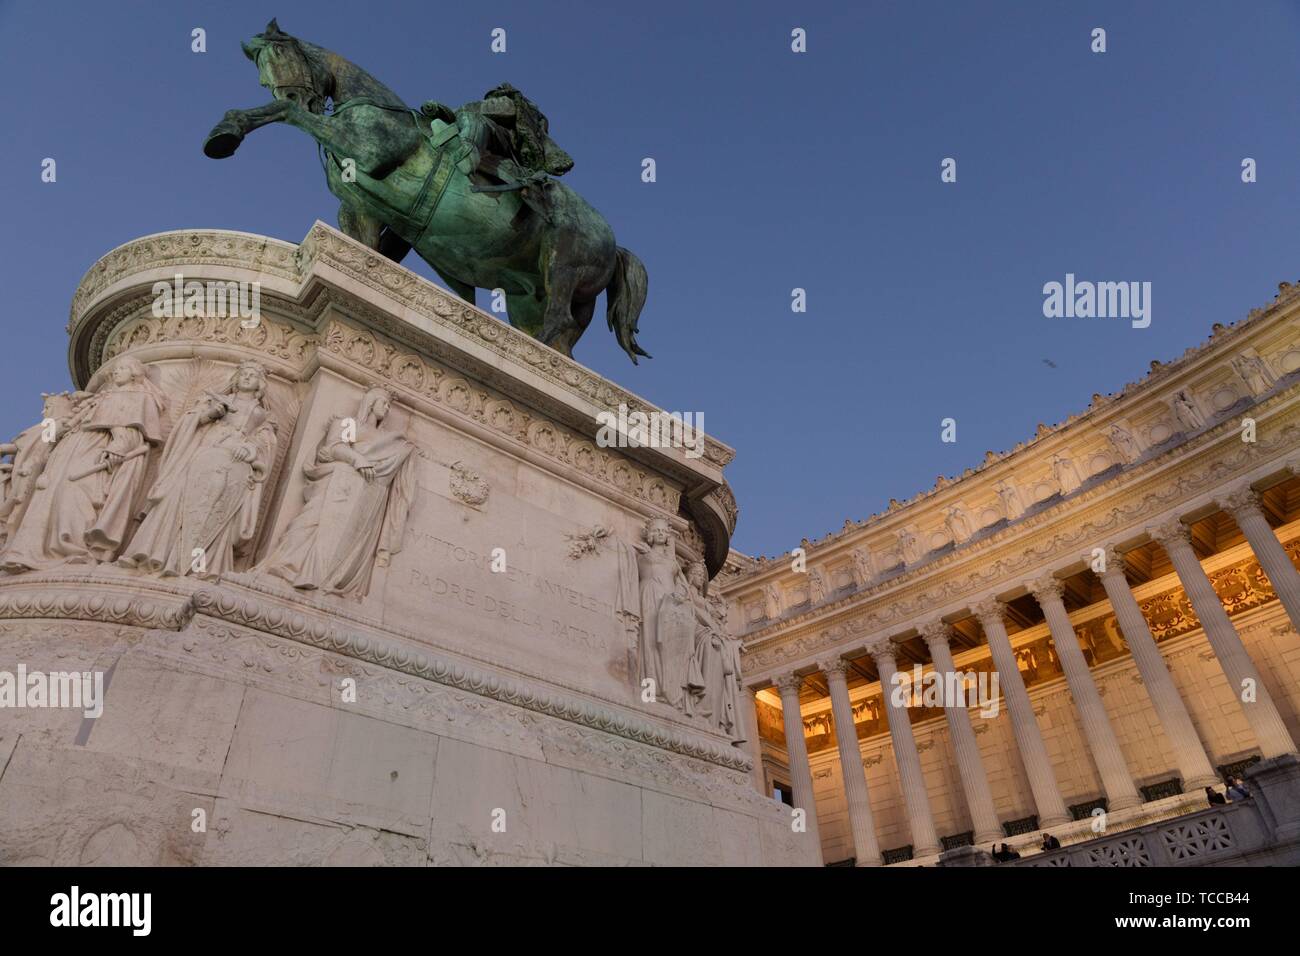 Vittoriale nel suo splendore bianco in Roma, Piazza Venezia, Italia. Foto Stock